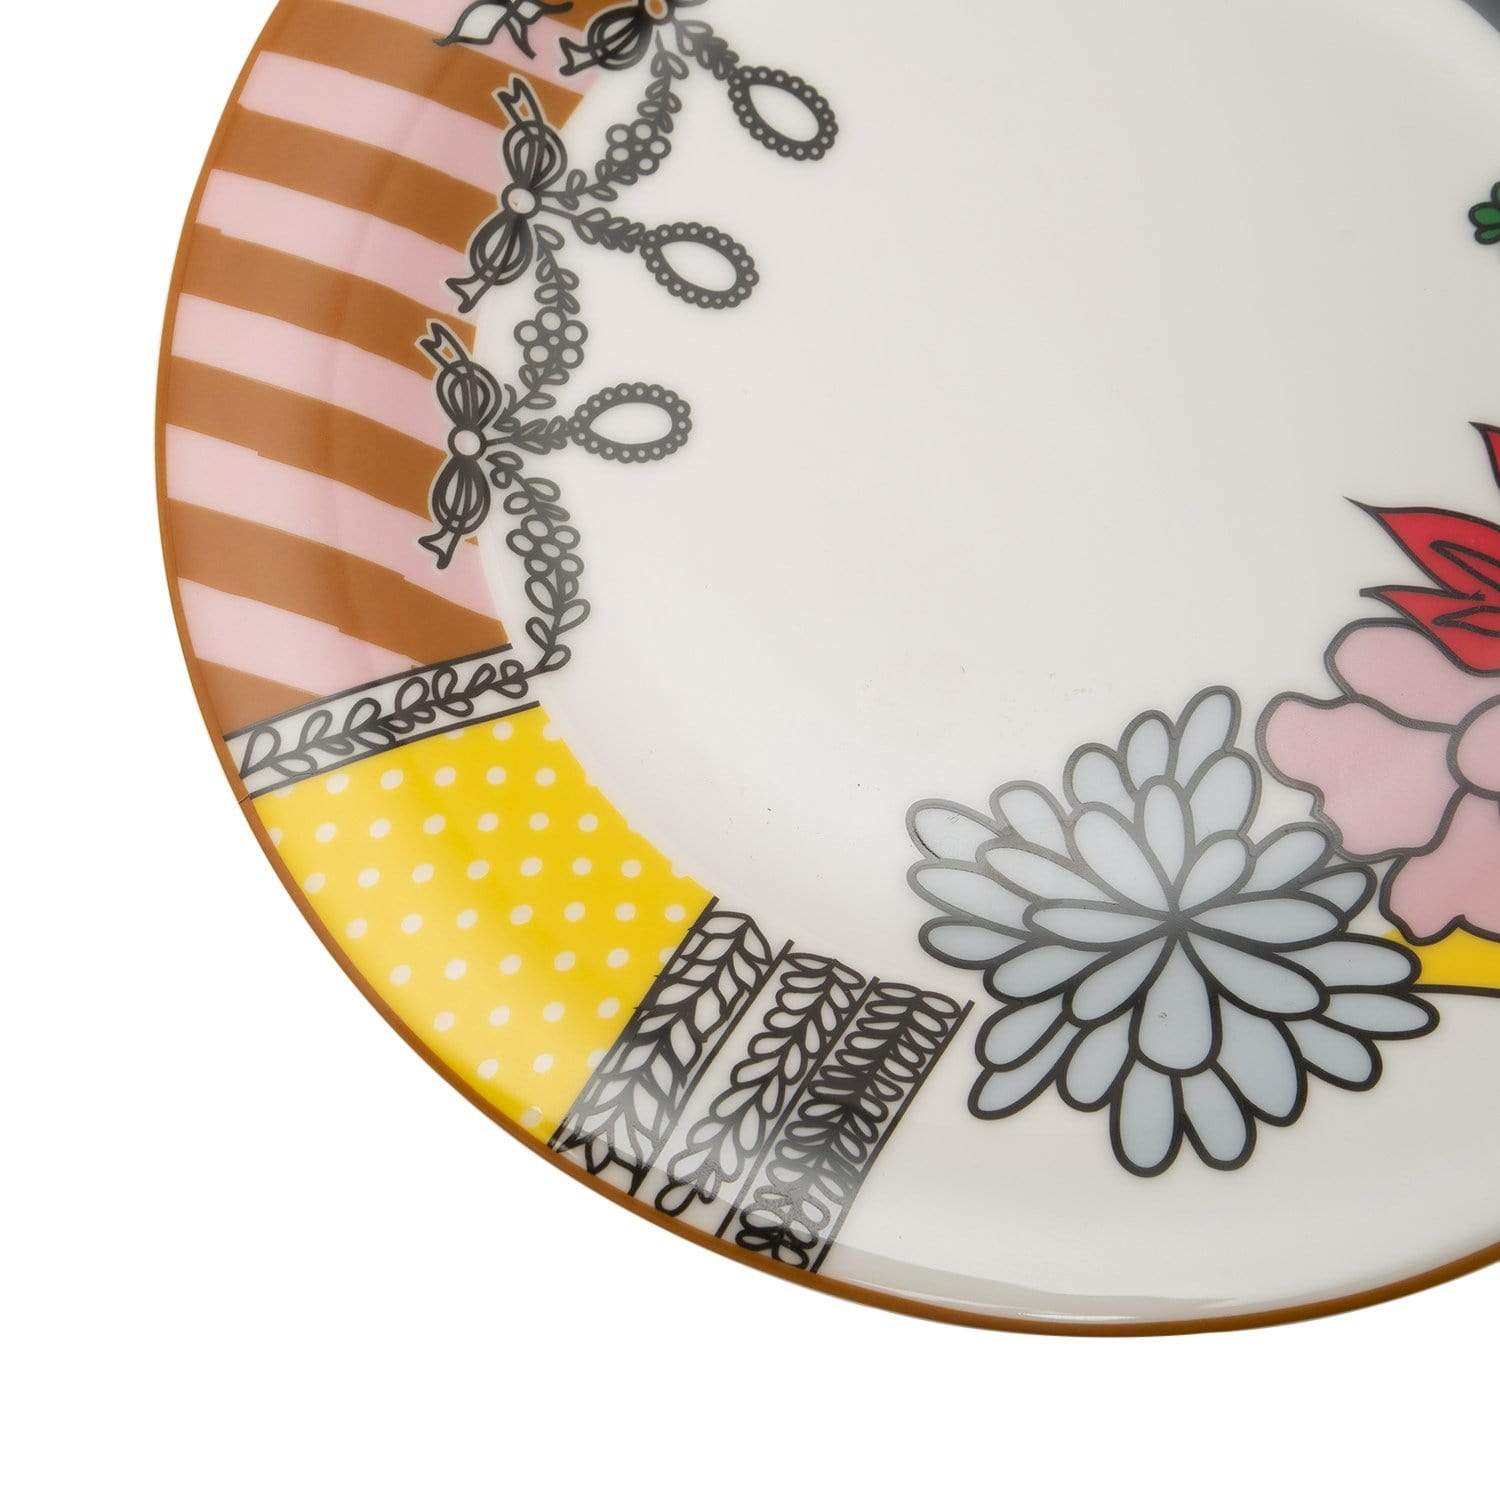 L'atelier FB Design Coupe Shape Dinner Plate Set - 26.5 x 26.5 cm, 6 Pieces - TC 4719 016 - Jashanmal Home